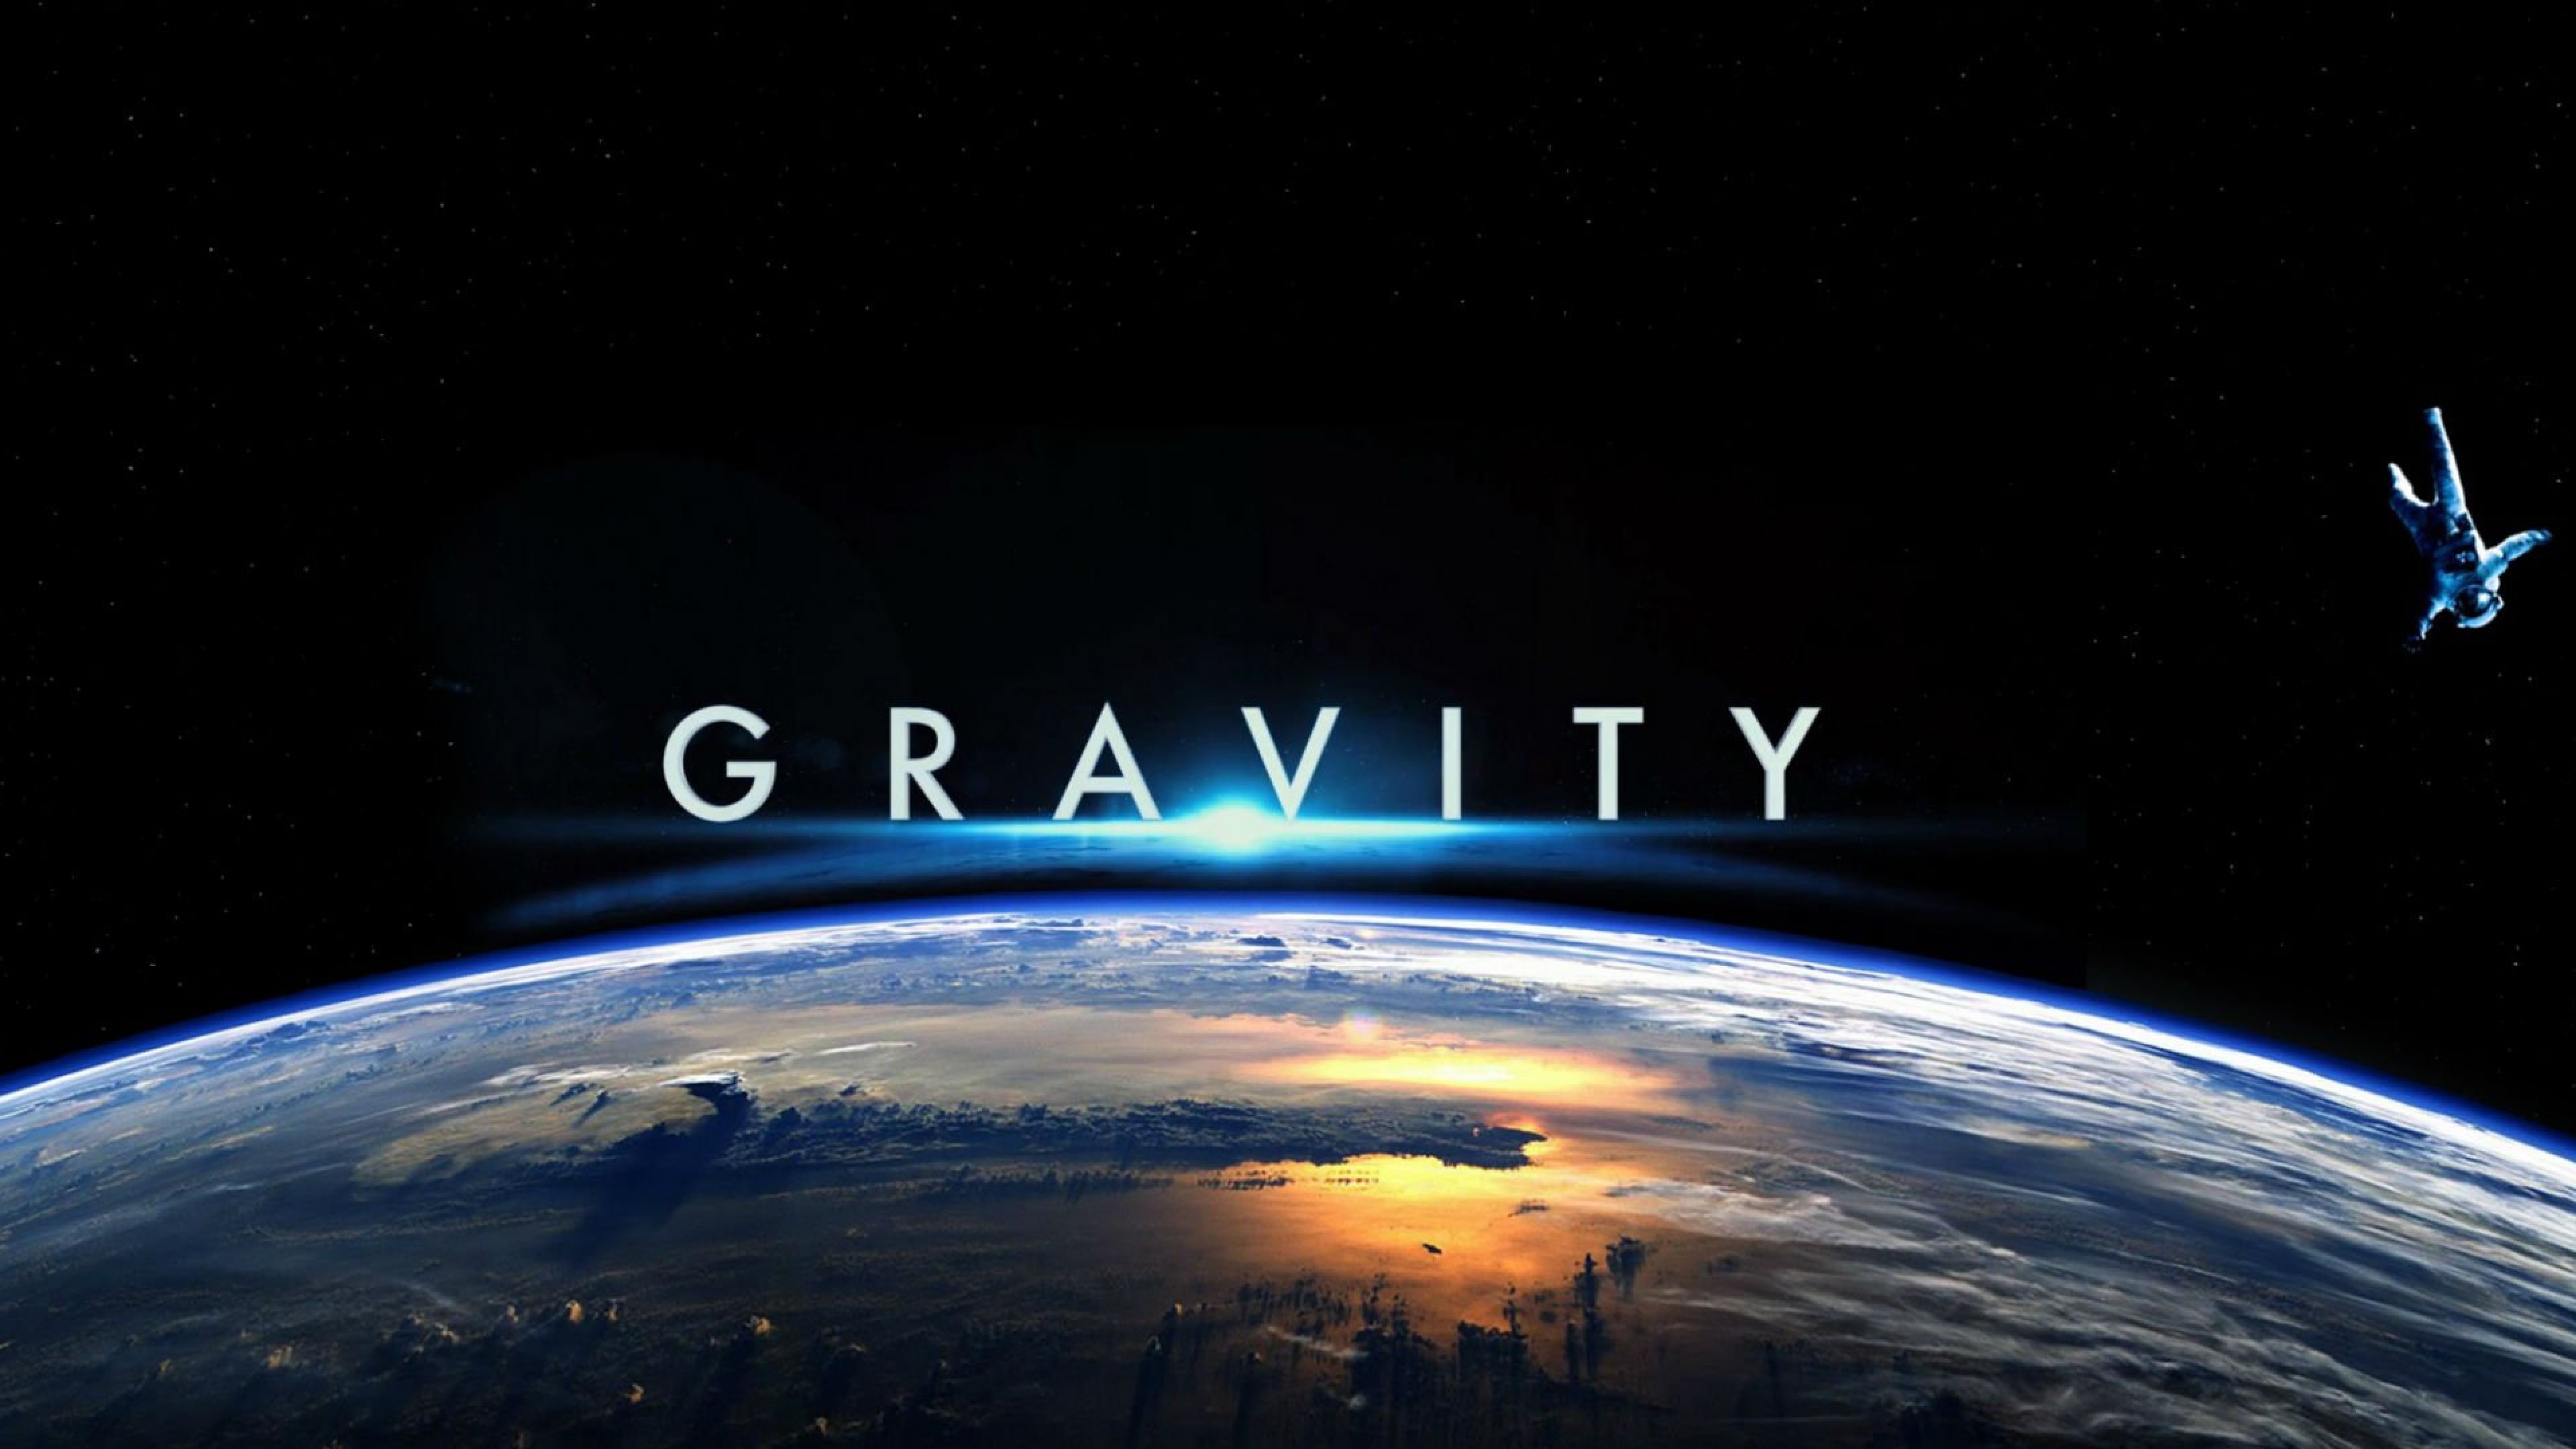 3840x2160 Gravity space wallpaper - . Download Â· Gravity space wallpaper